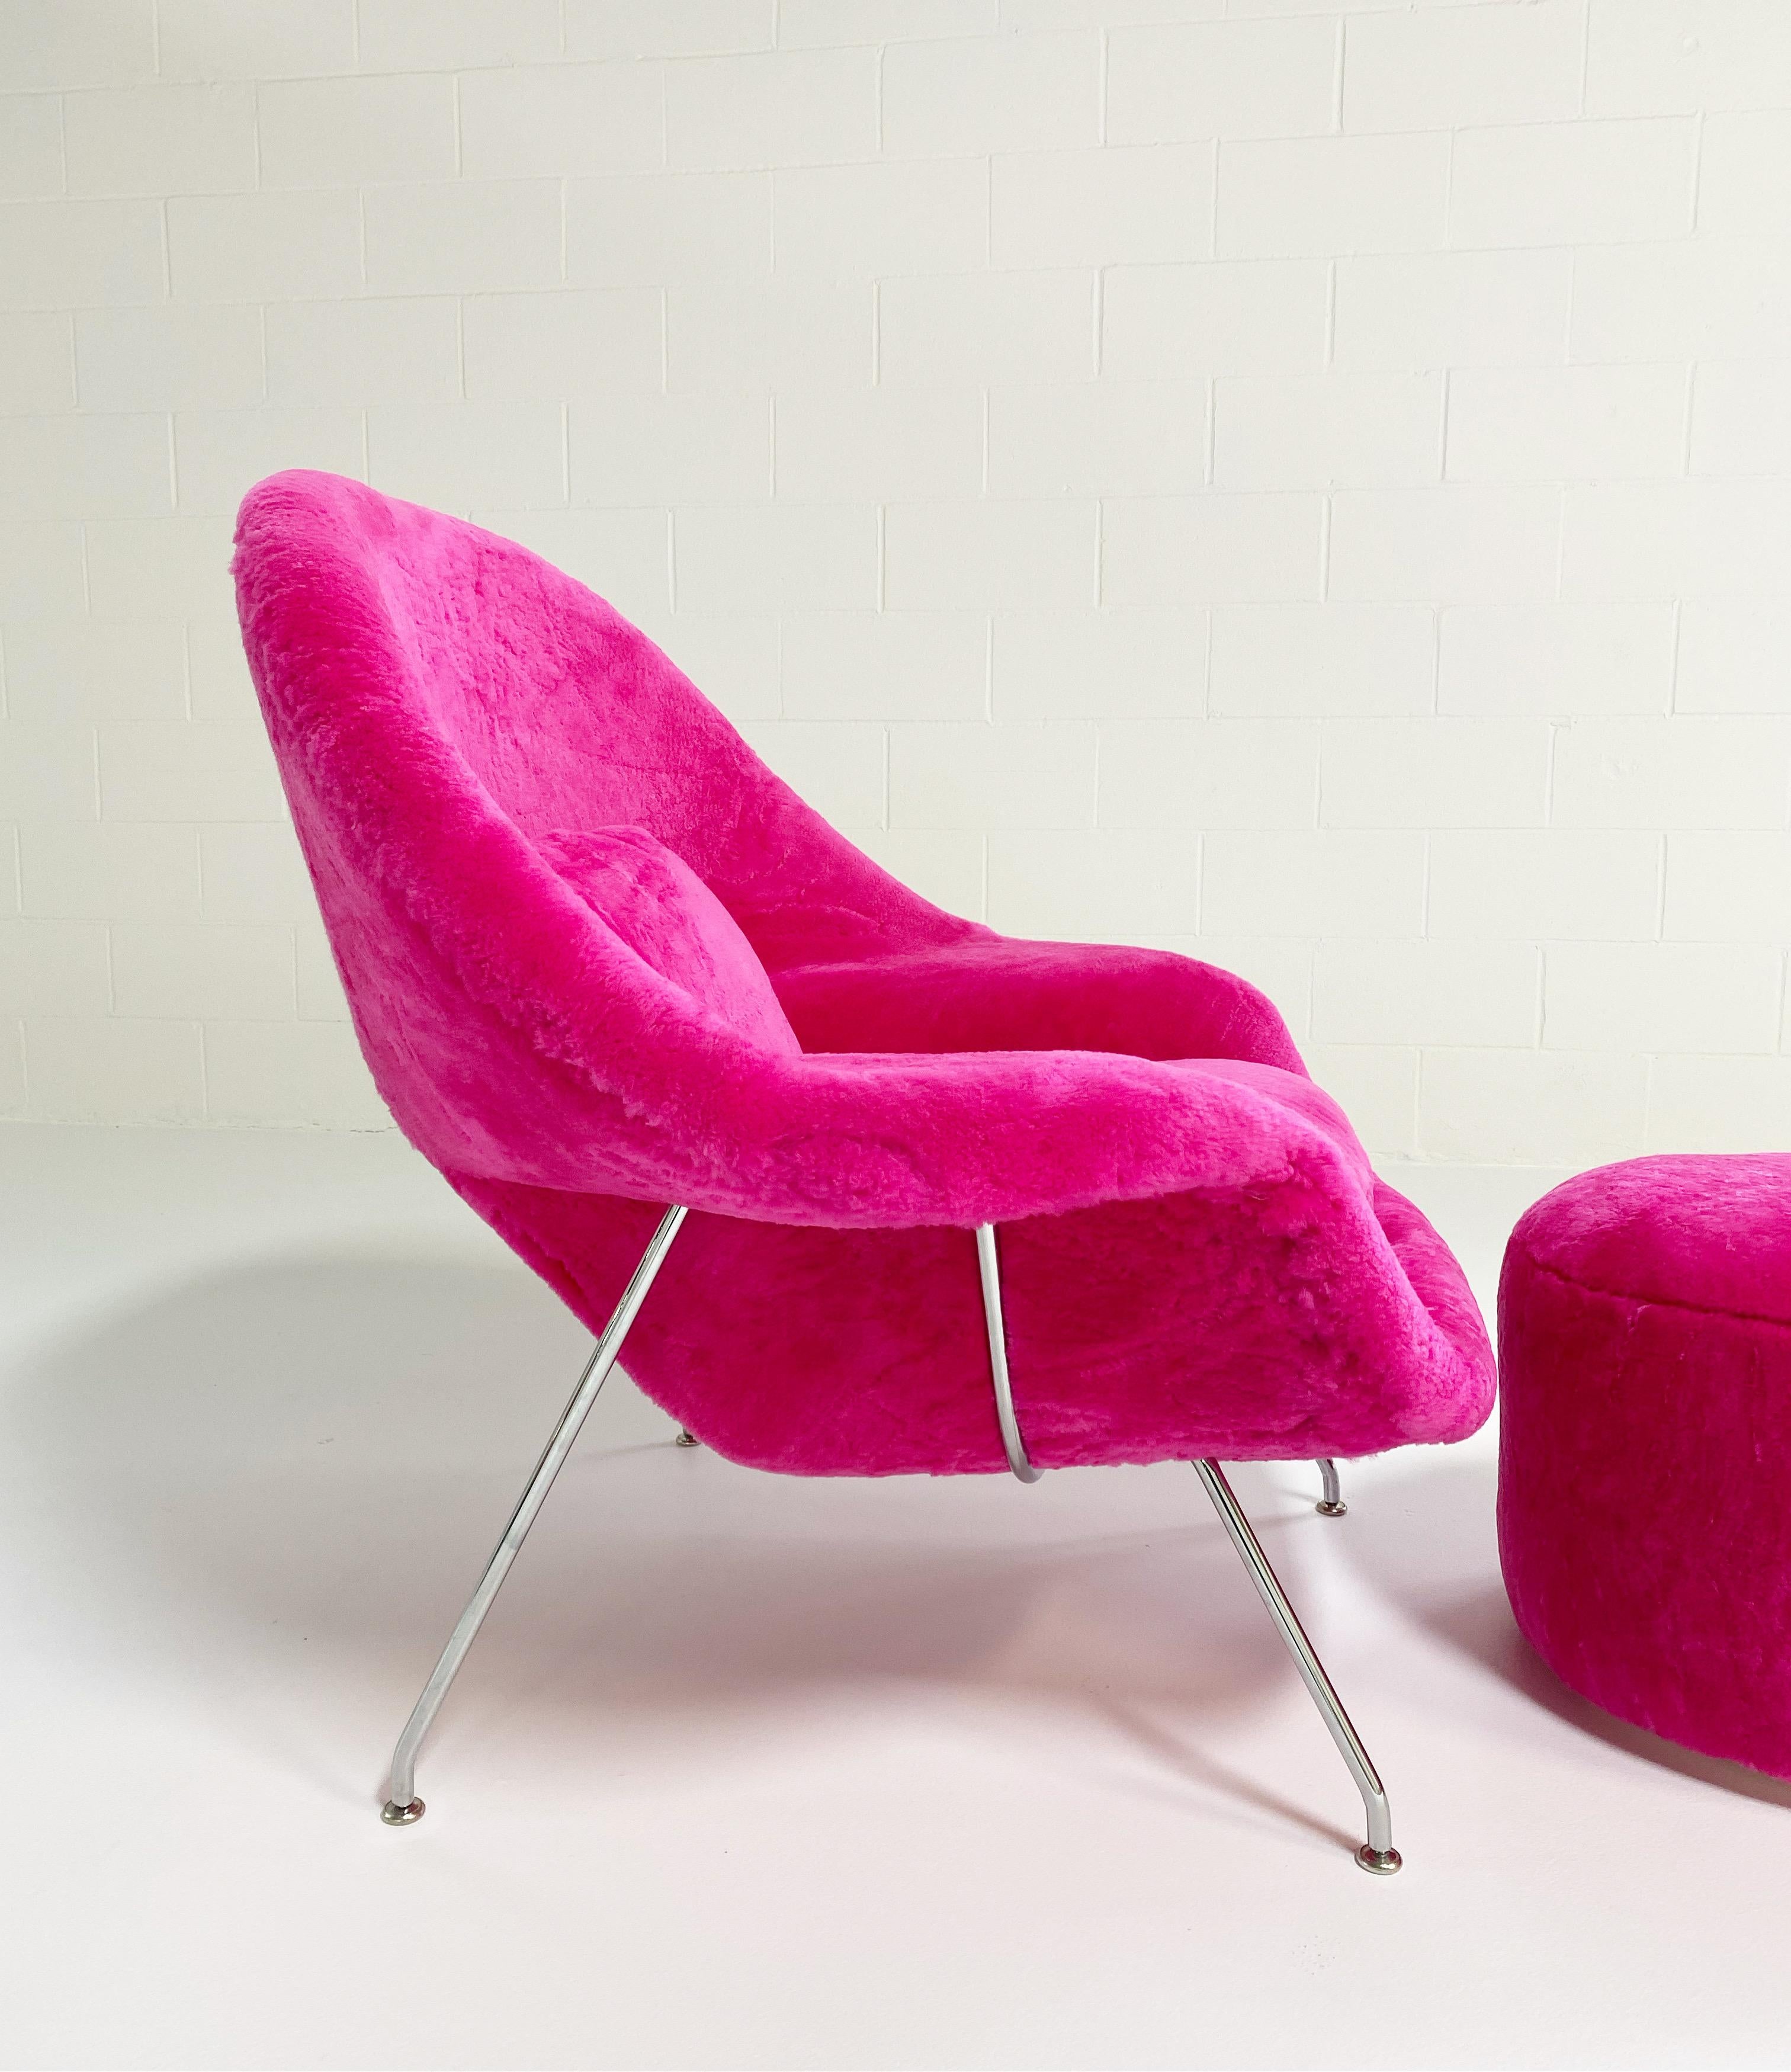 Ein Favorit des Forsyth-Designteams!

Wir haben eine unglaubliche Sammlung von Vintage-Stühlen und Design-Ikonen, die auf ein neues Leben warten. Unsere upgecycelten Womb-Stühle gehören zu unseren beliebtesten Designs. 

Dieser Womb Chair und